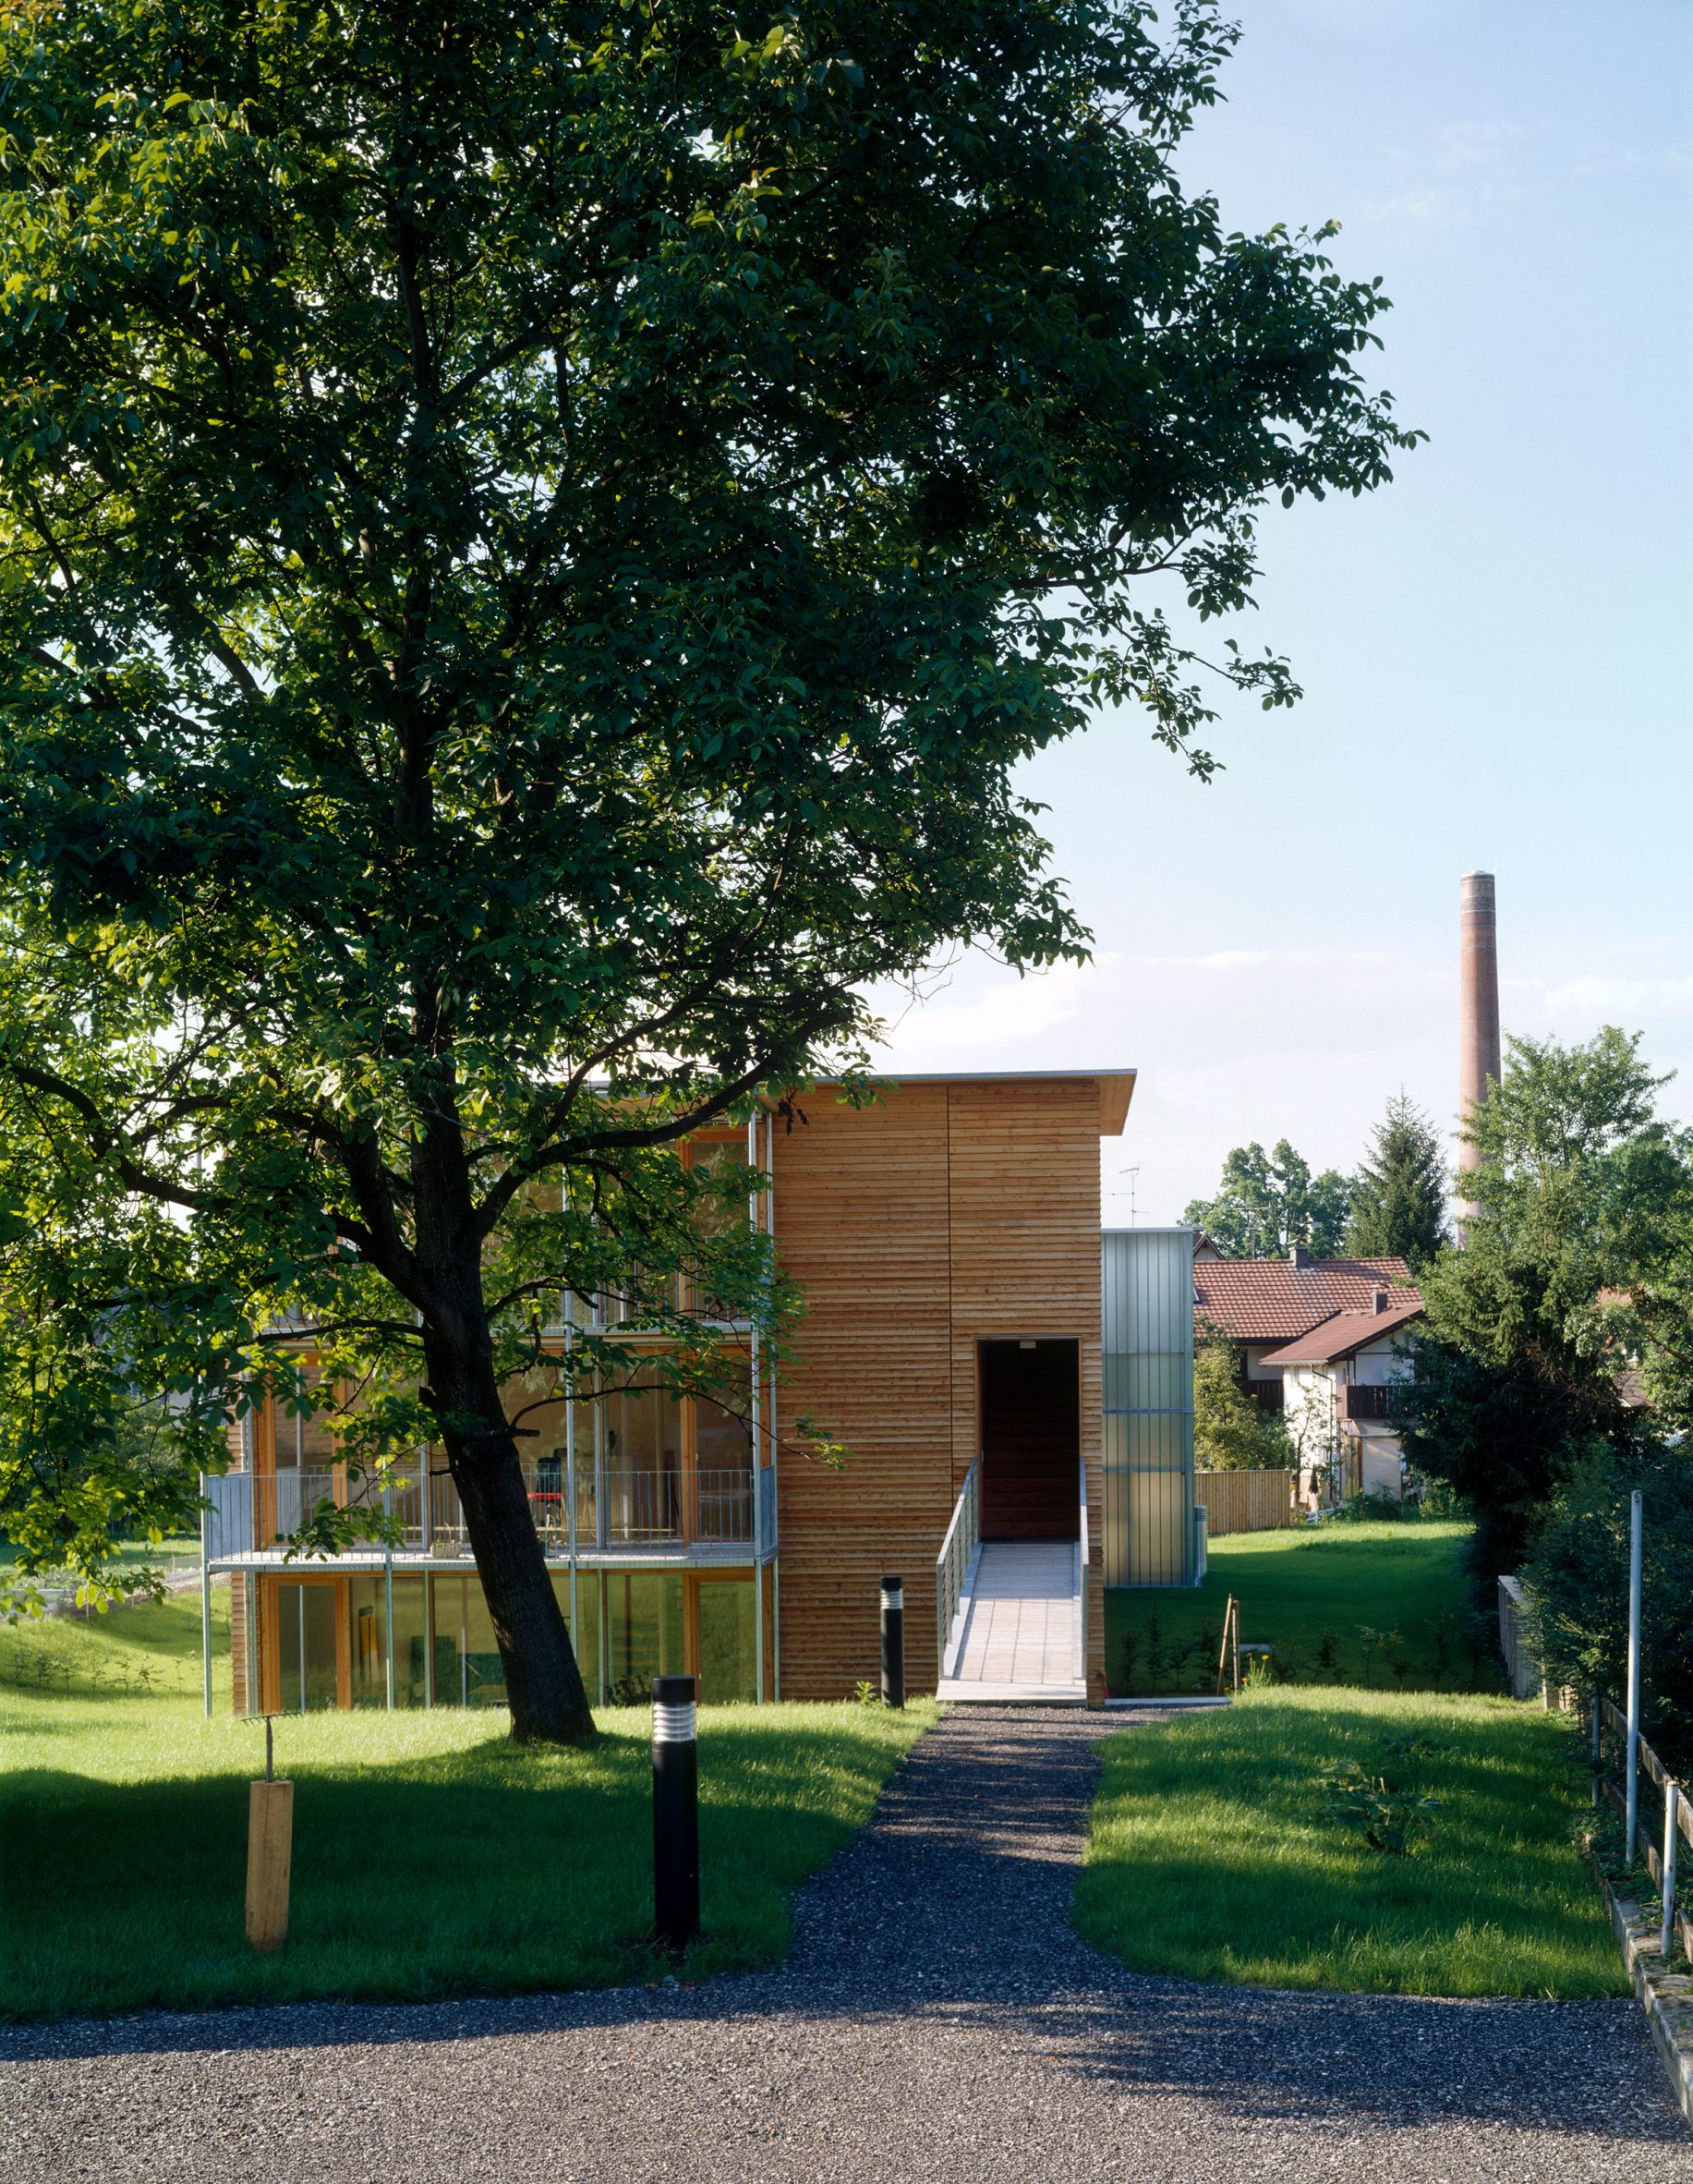 Mass-timber building in Austria by HK Architekten